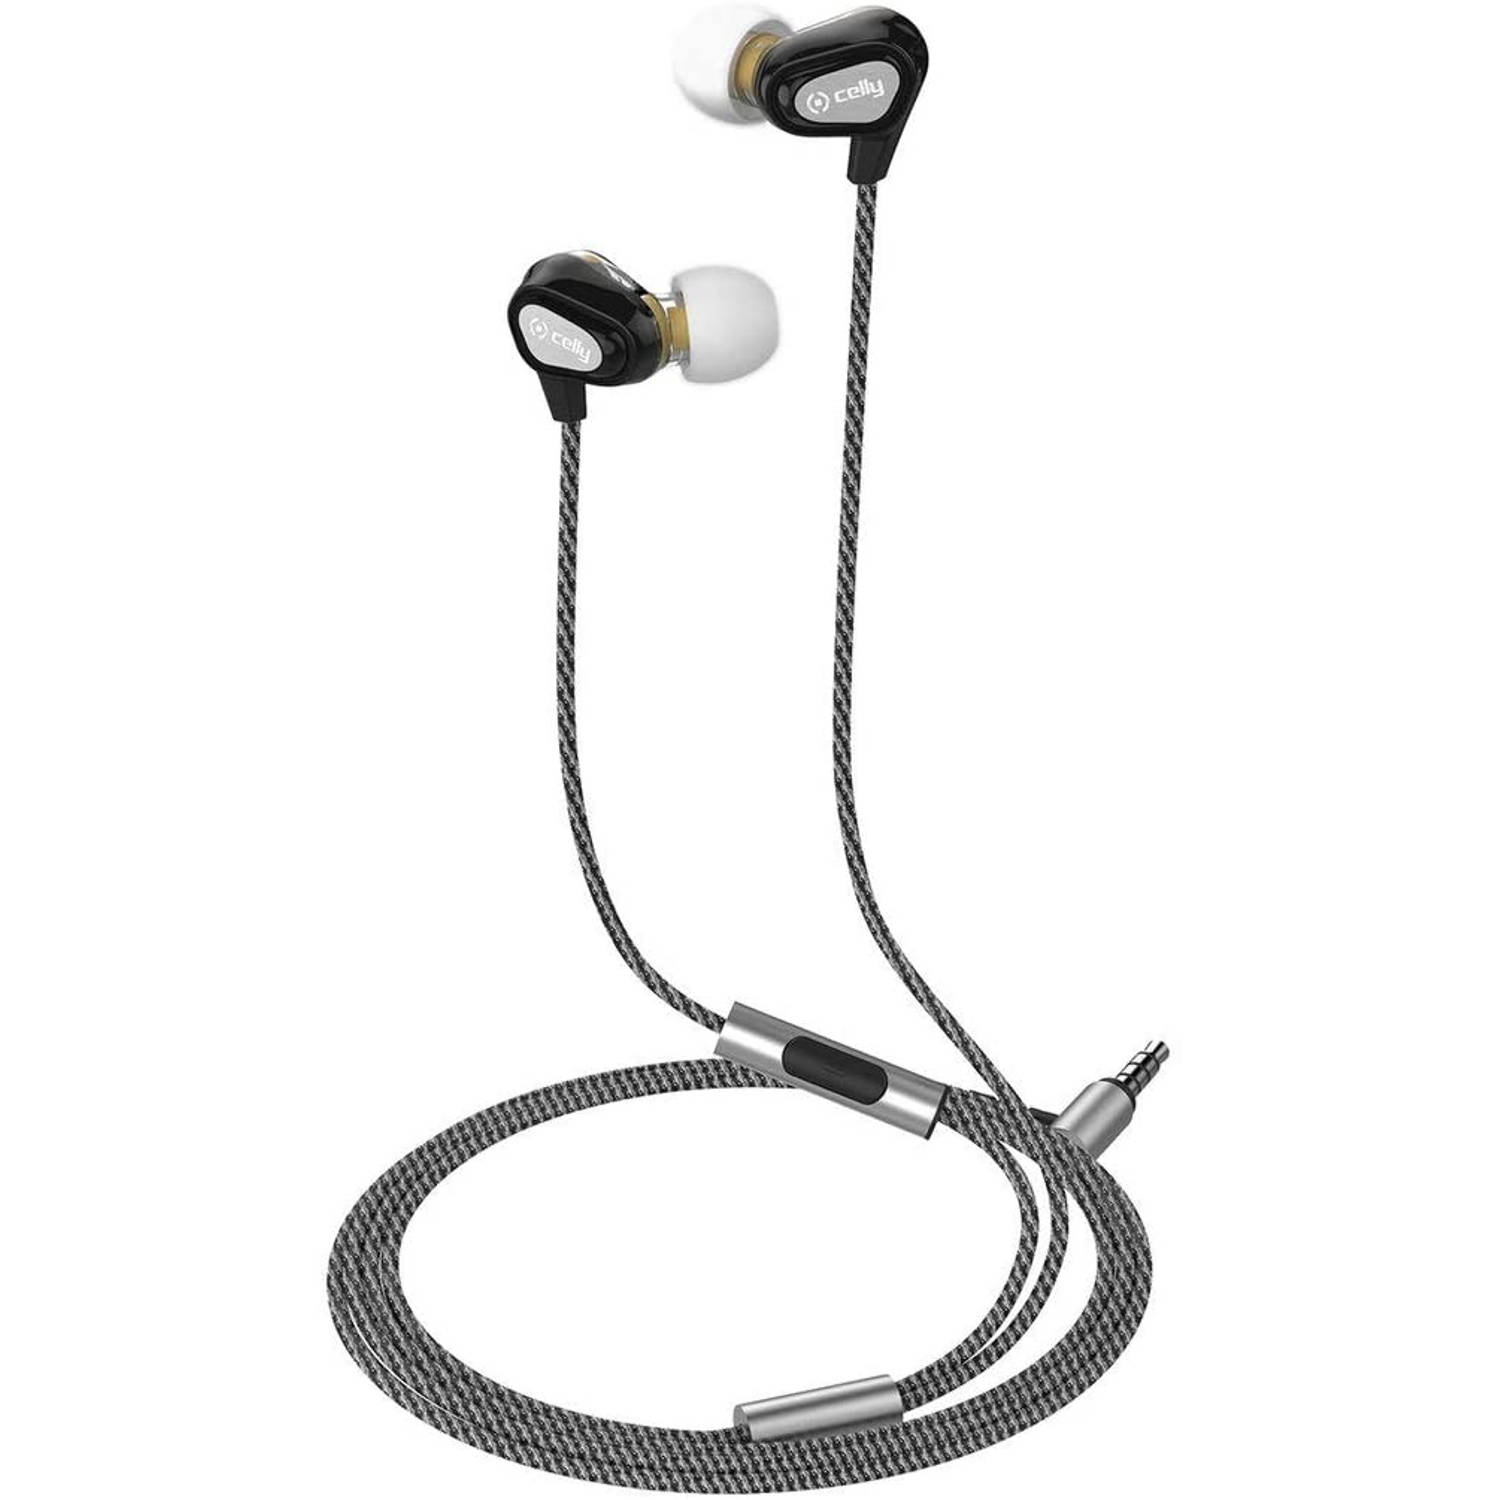 Celly UP800BK In-ear Stereofonisch Bedraad Zwart mobiele hoofdtelefoon